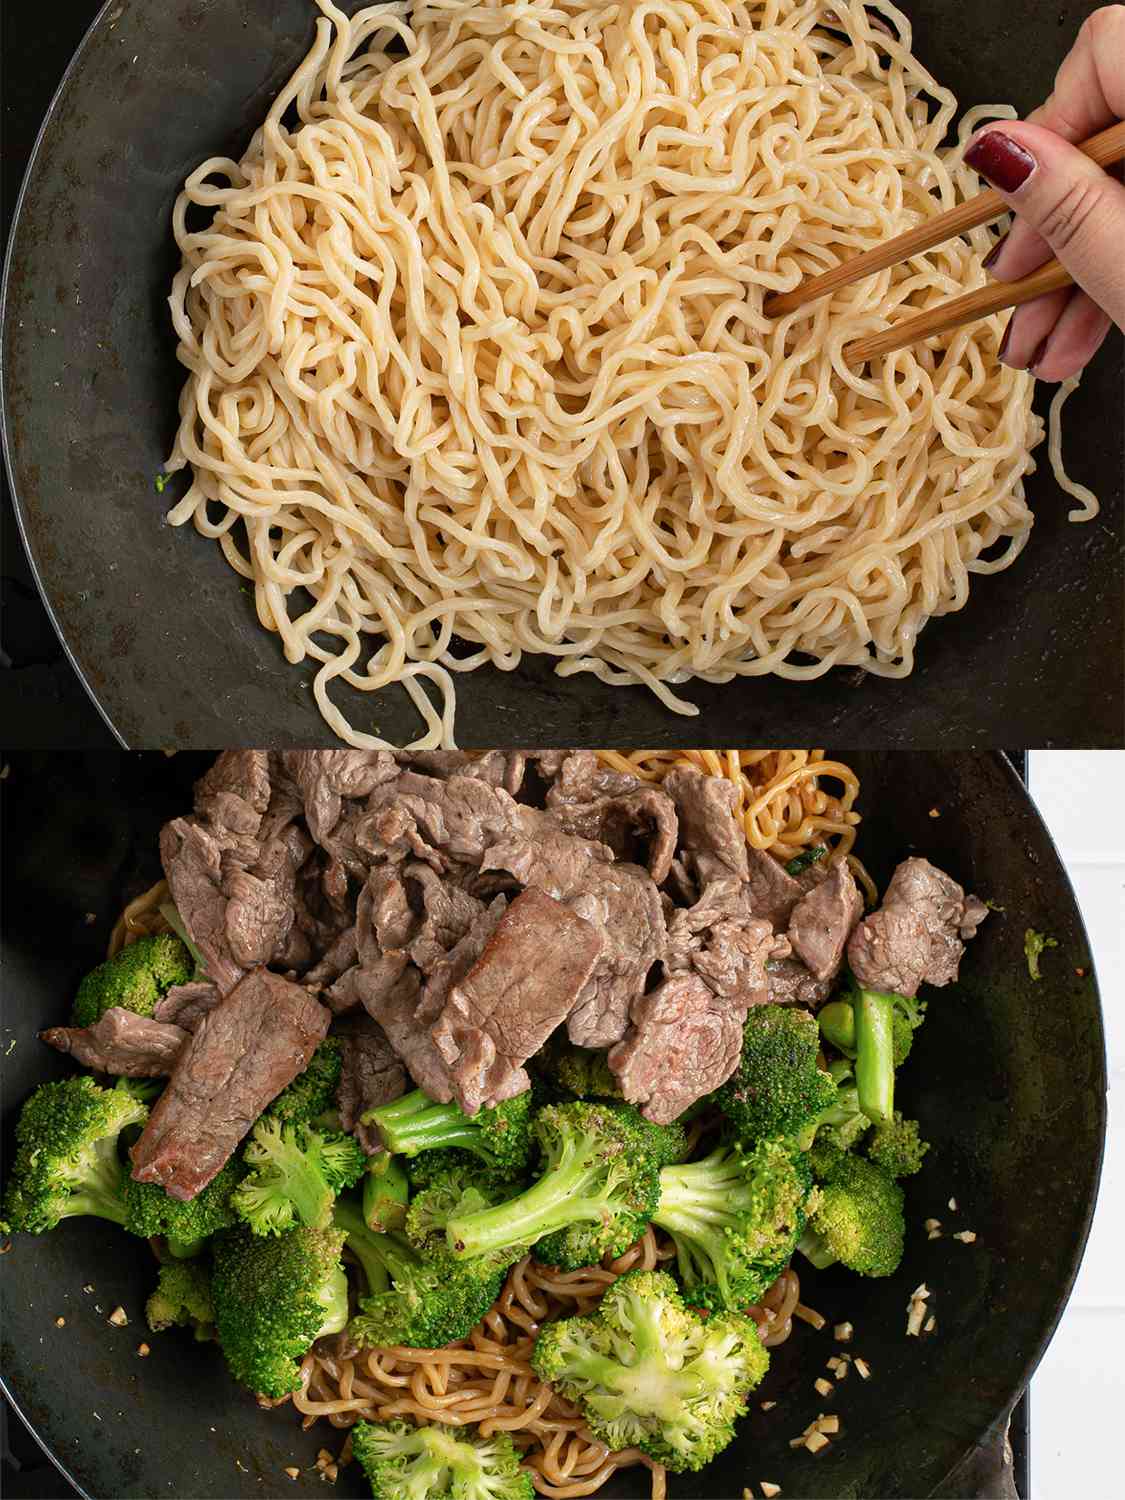 两幅图像的拼贴画。上图显示的是面条在锅里用筷子在高温下搅拌。下图显示的是锅里的蒜、西兰花和牛肉。